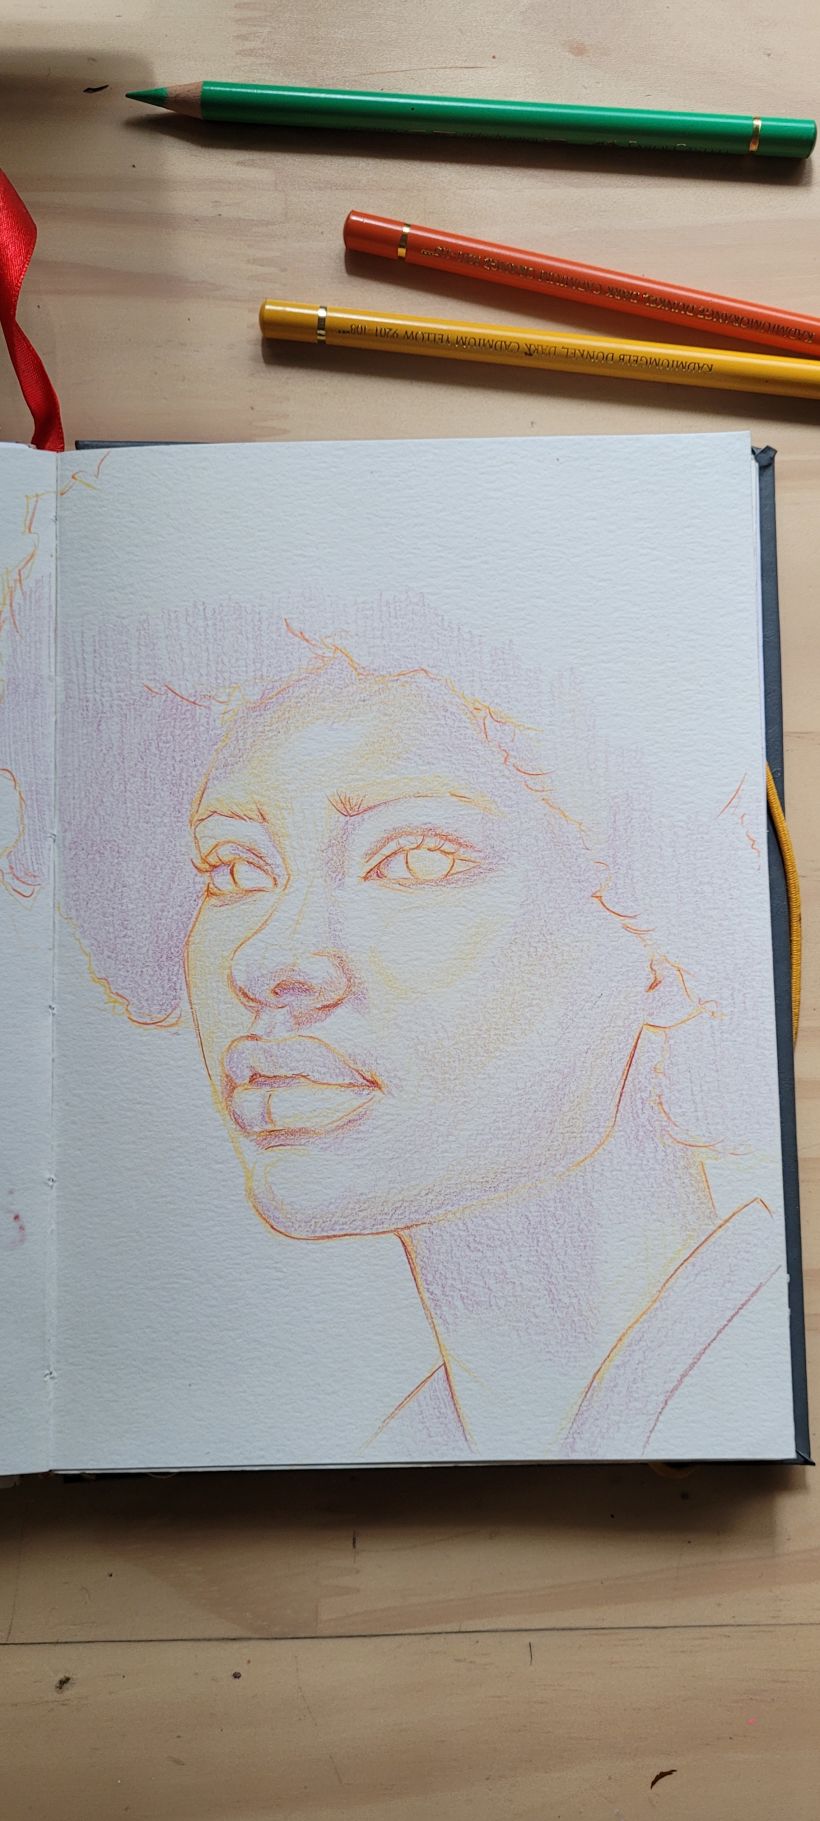 Meu projeto do curso: Desenho de retratos vibrantes com lápis de cor 9